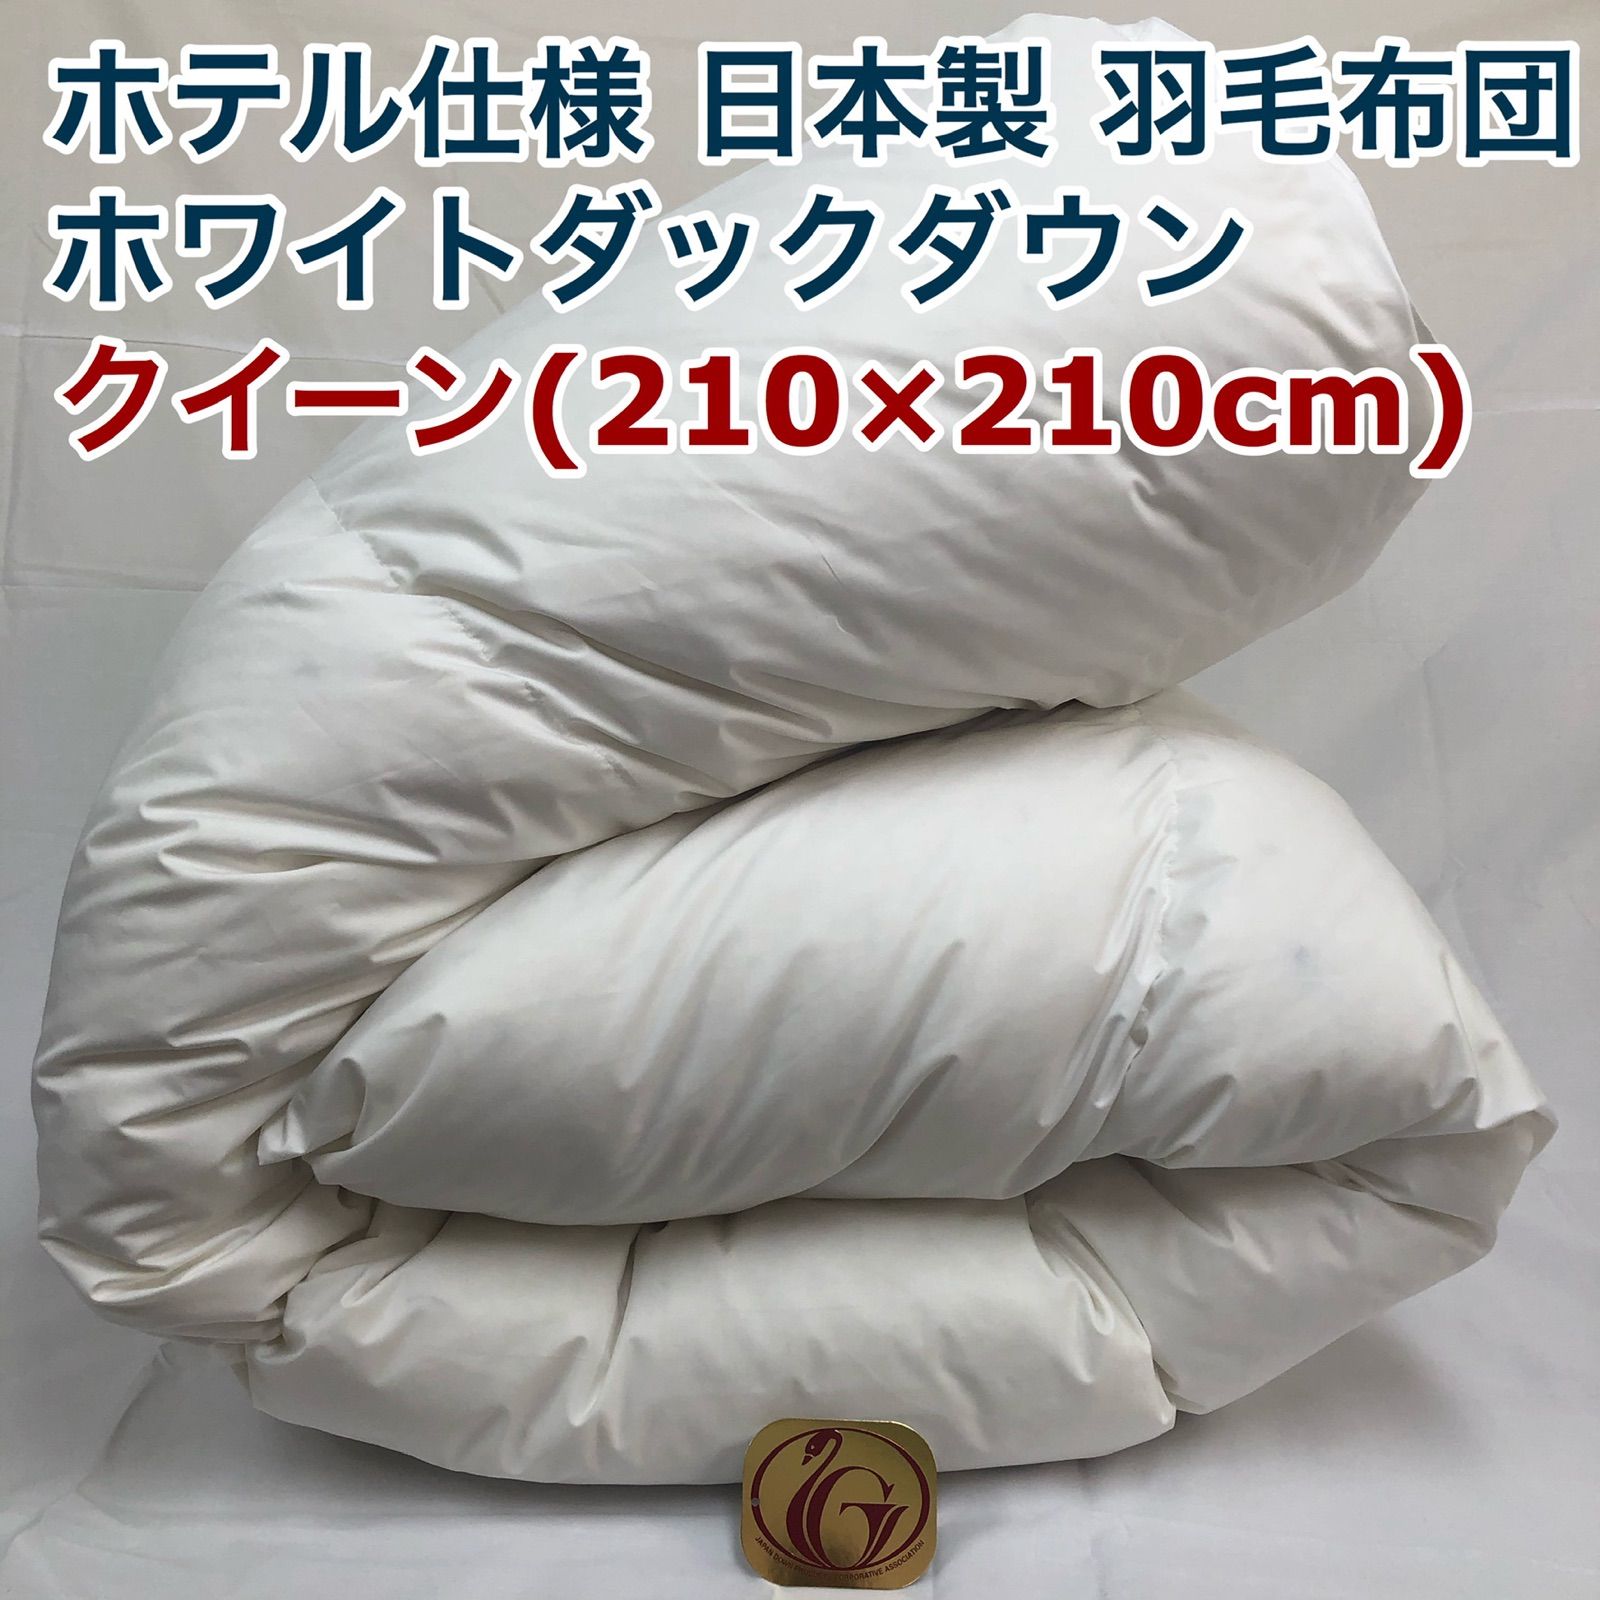 羽毛布団 クイーン クィーン ニューゴールド 白色 日本製 210×210cm